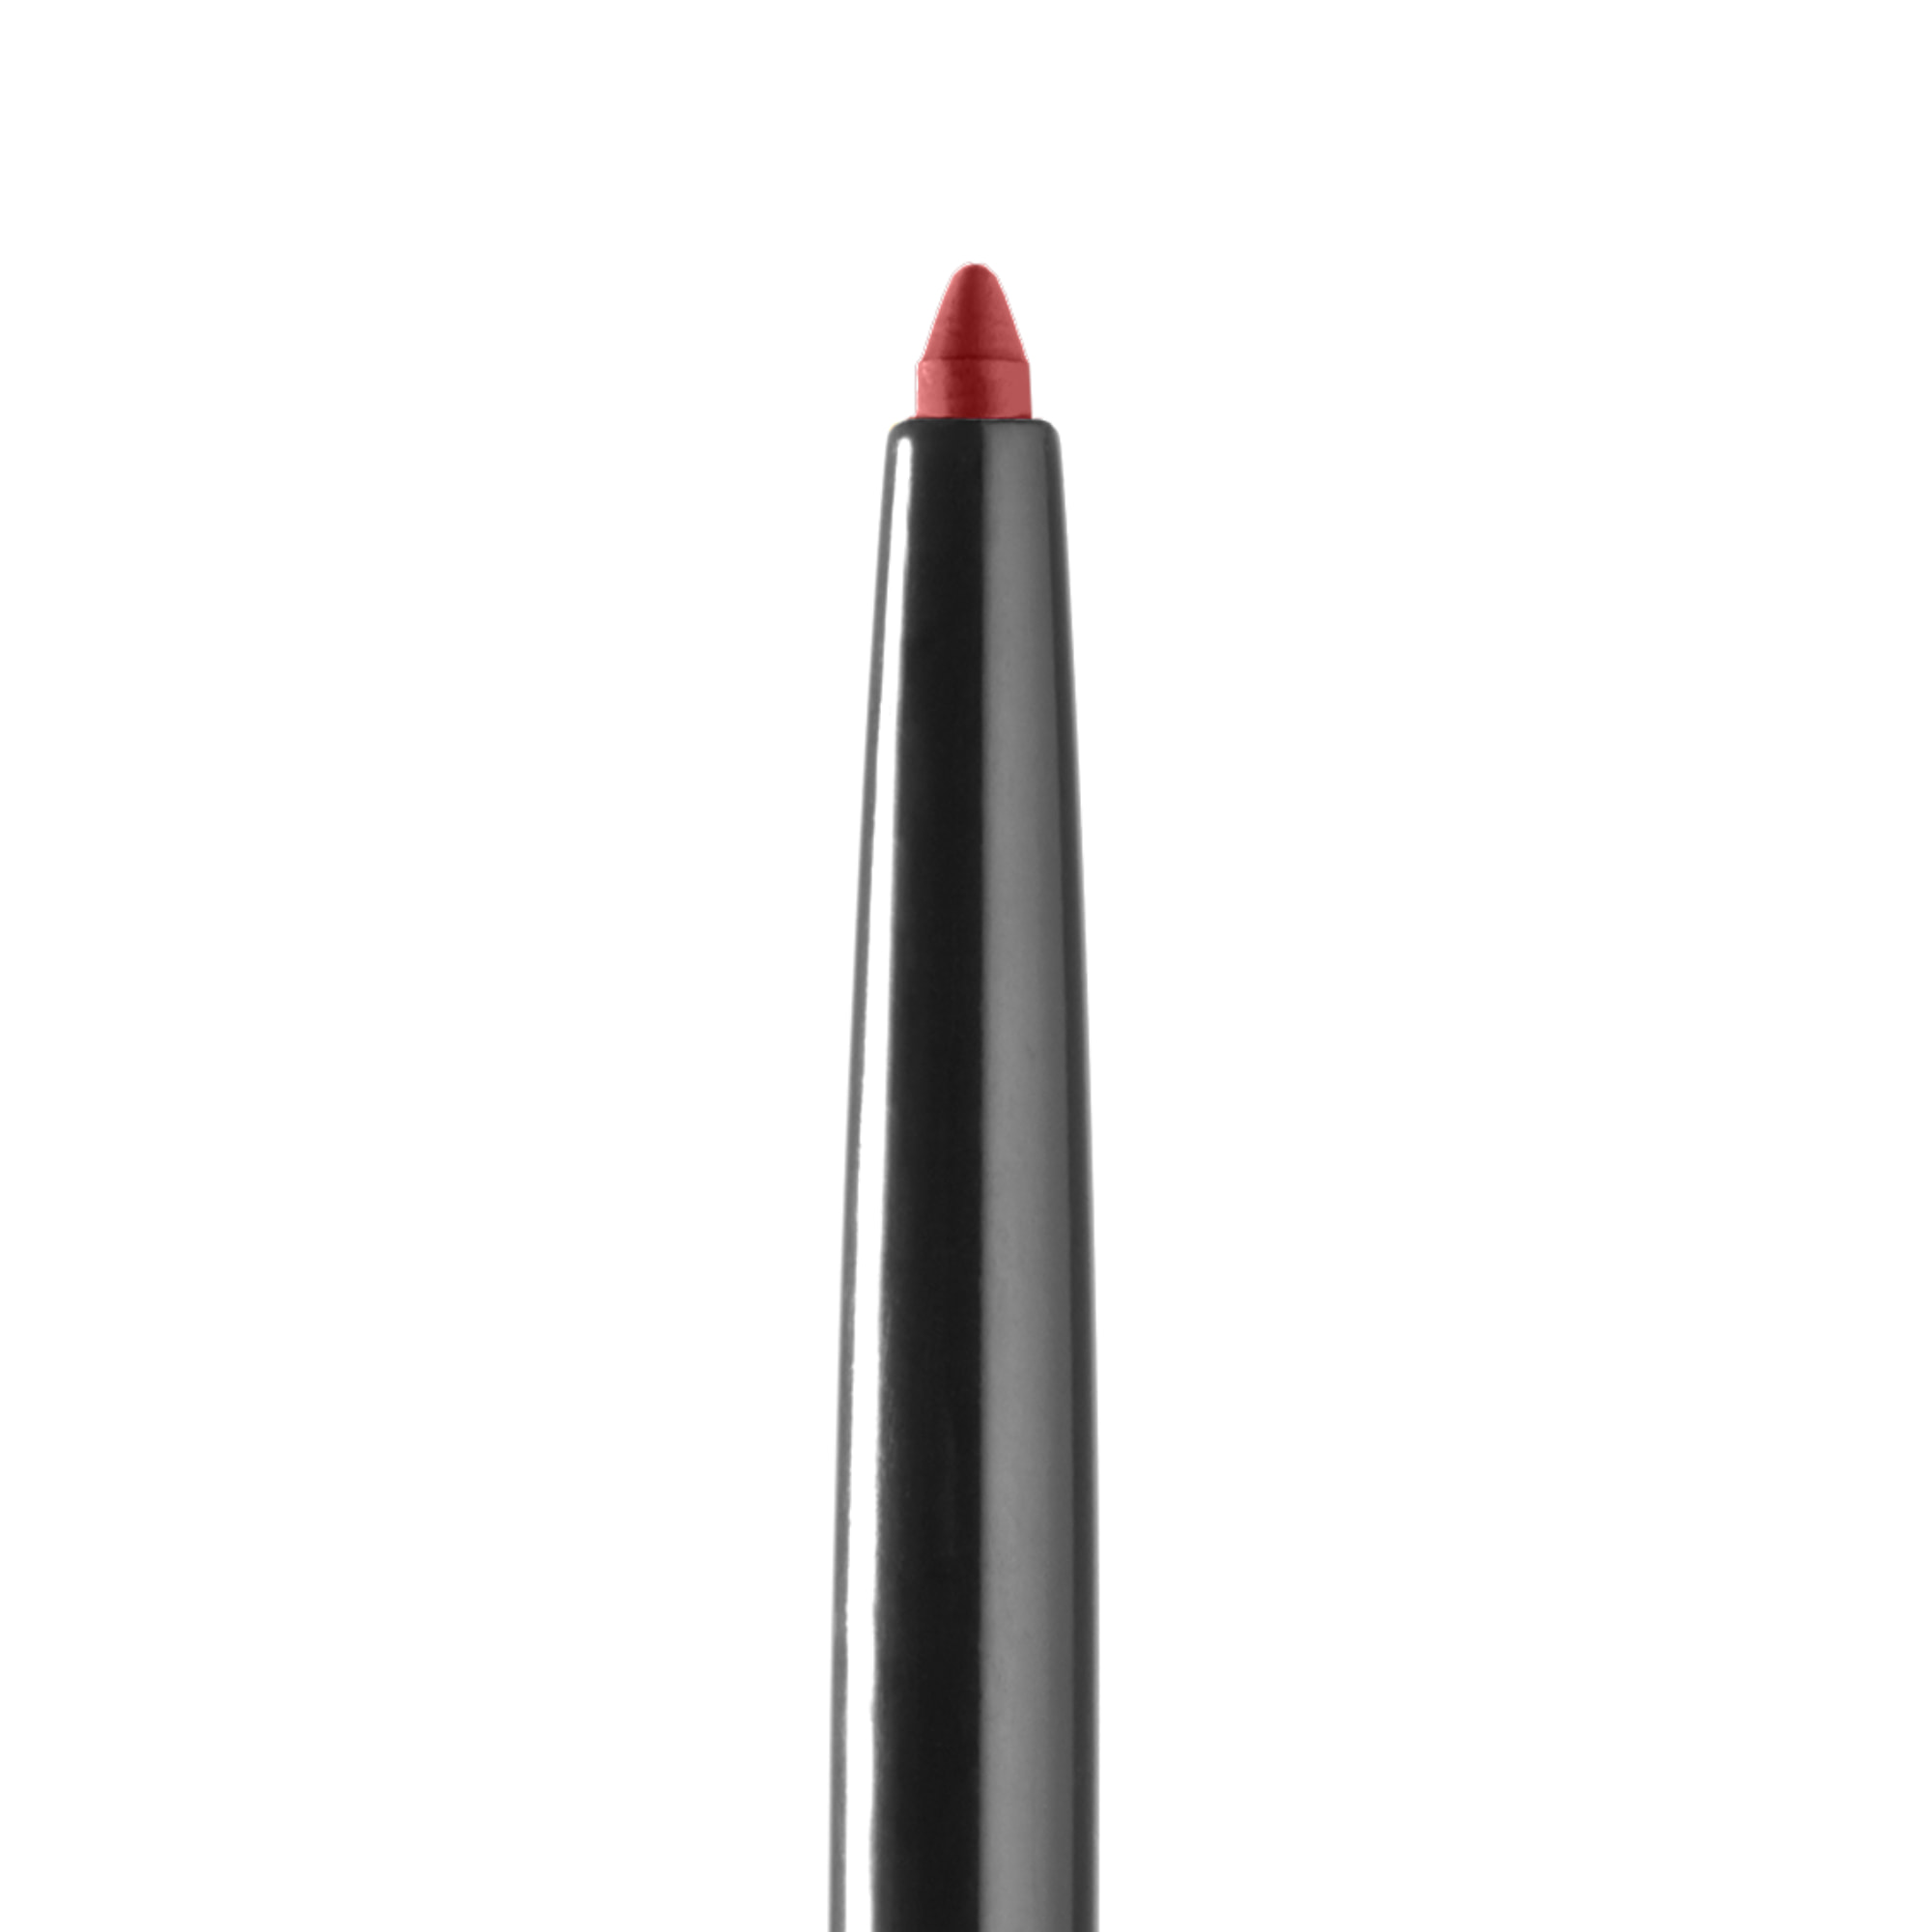 Crayon Shaping Lip Liner 80